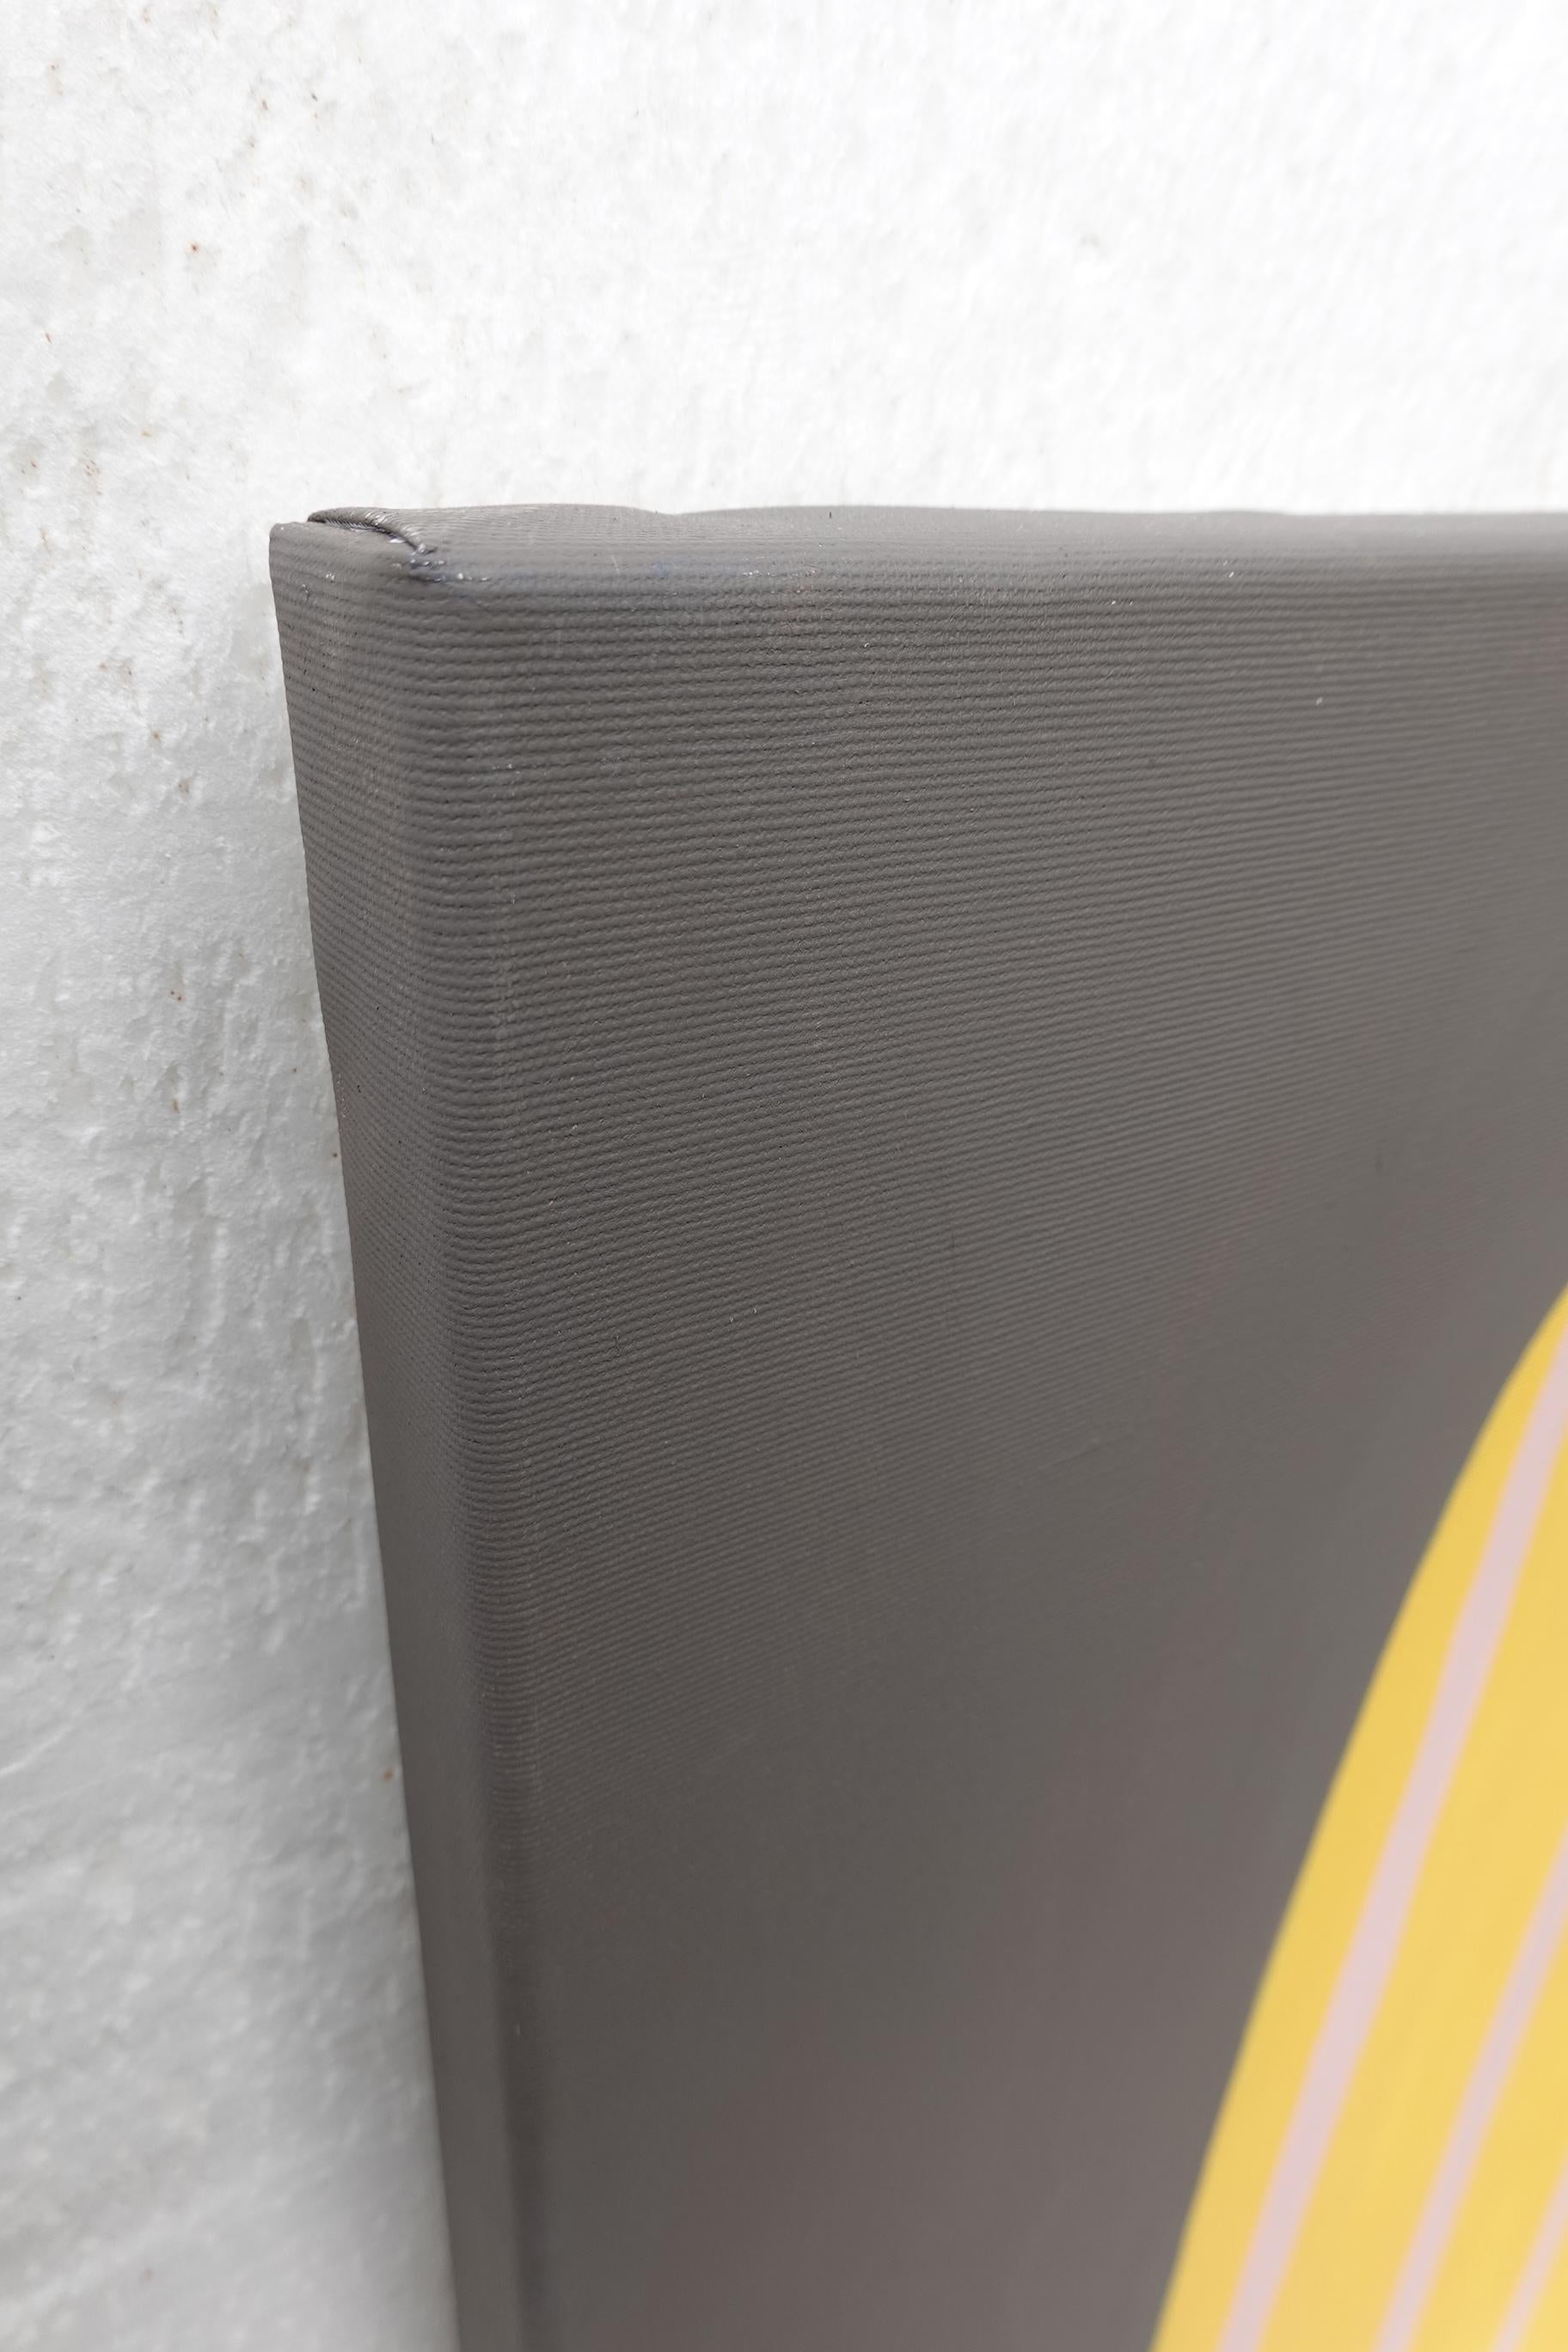 Peinture acrylique abstraite « Beaming IV », jaune foncé sur gris audacieux, courbes à rayures en vente 2